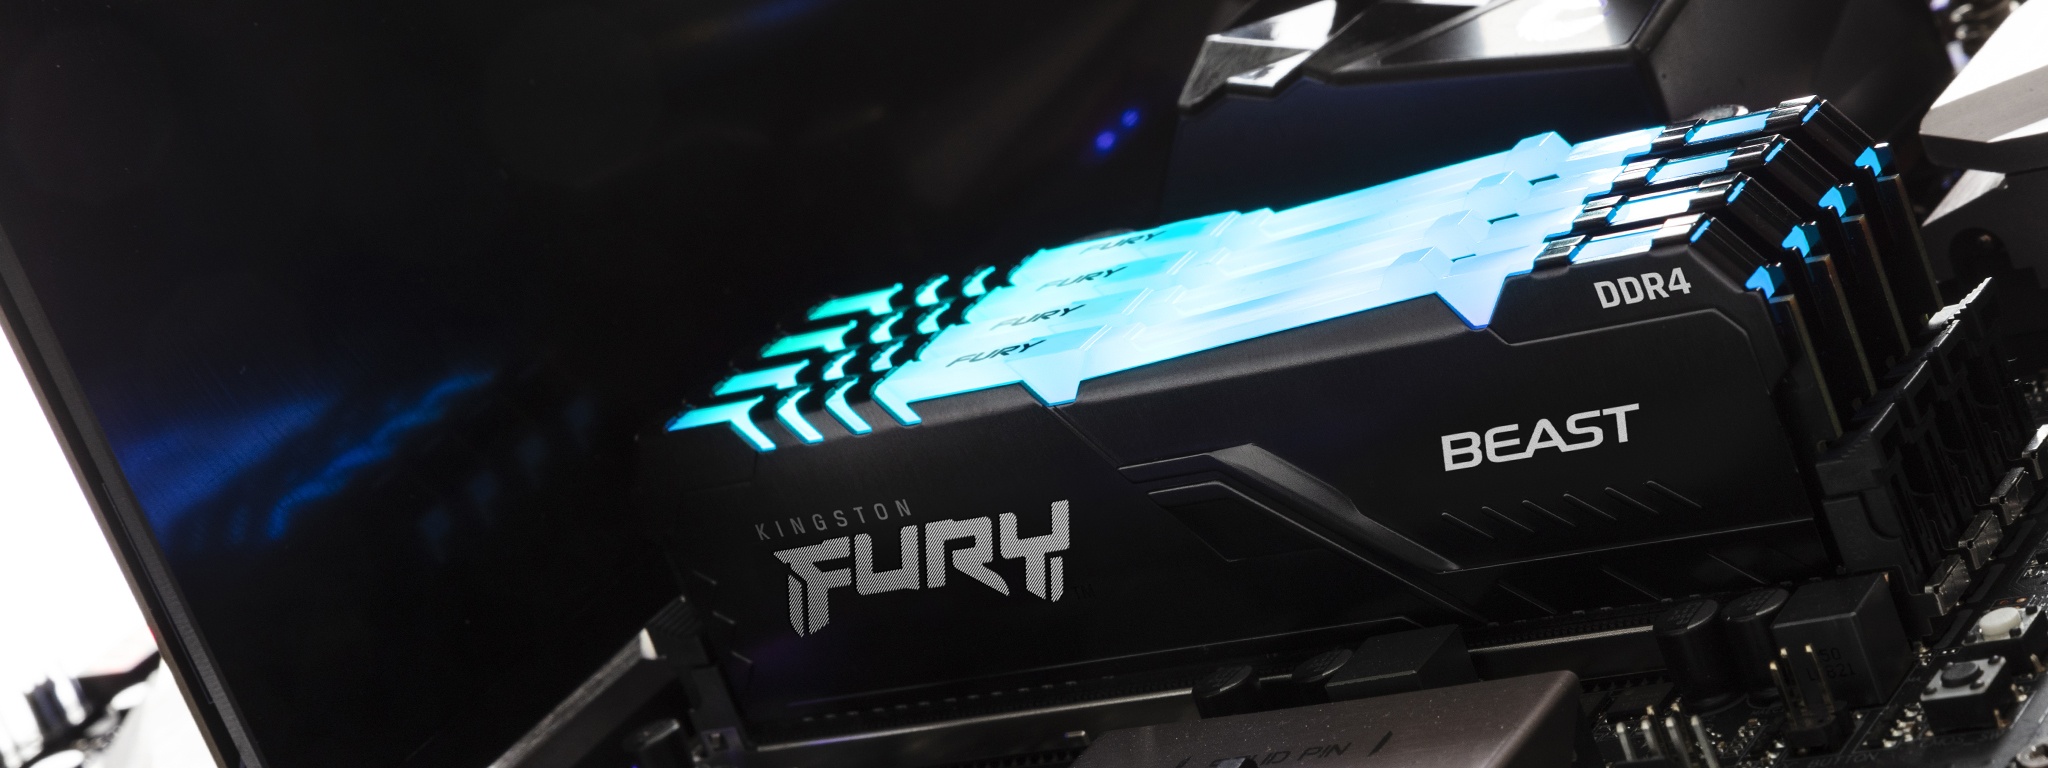 PC 中安装的金士顿 FURY Beast RGB 模组，顶部散发蓝光